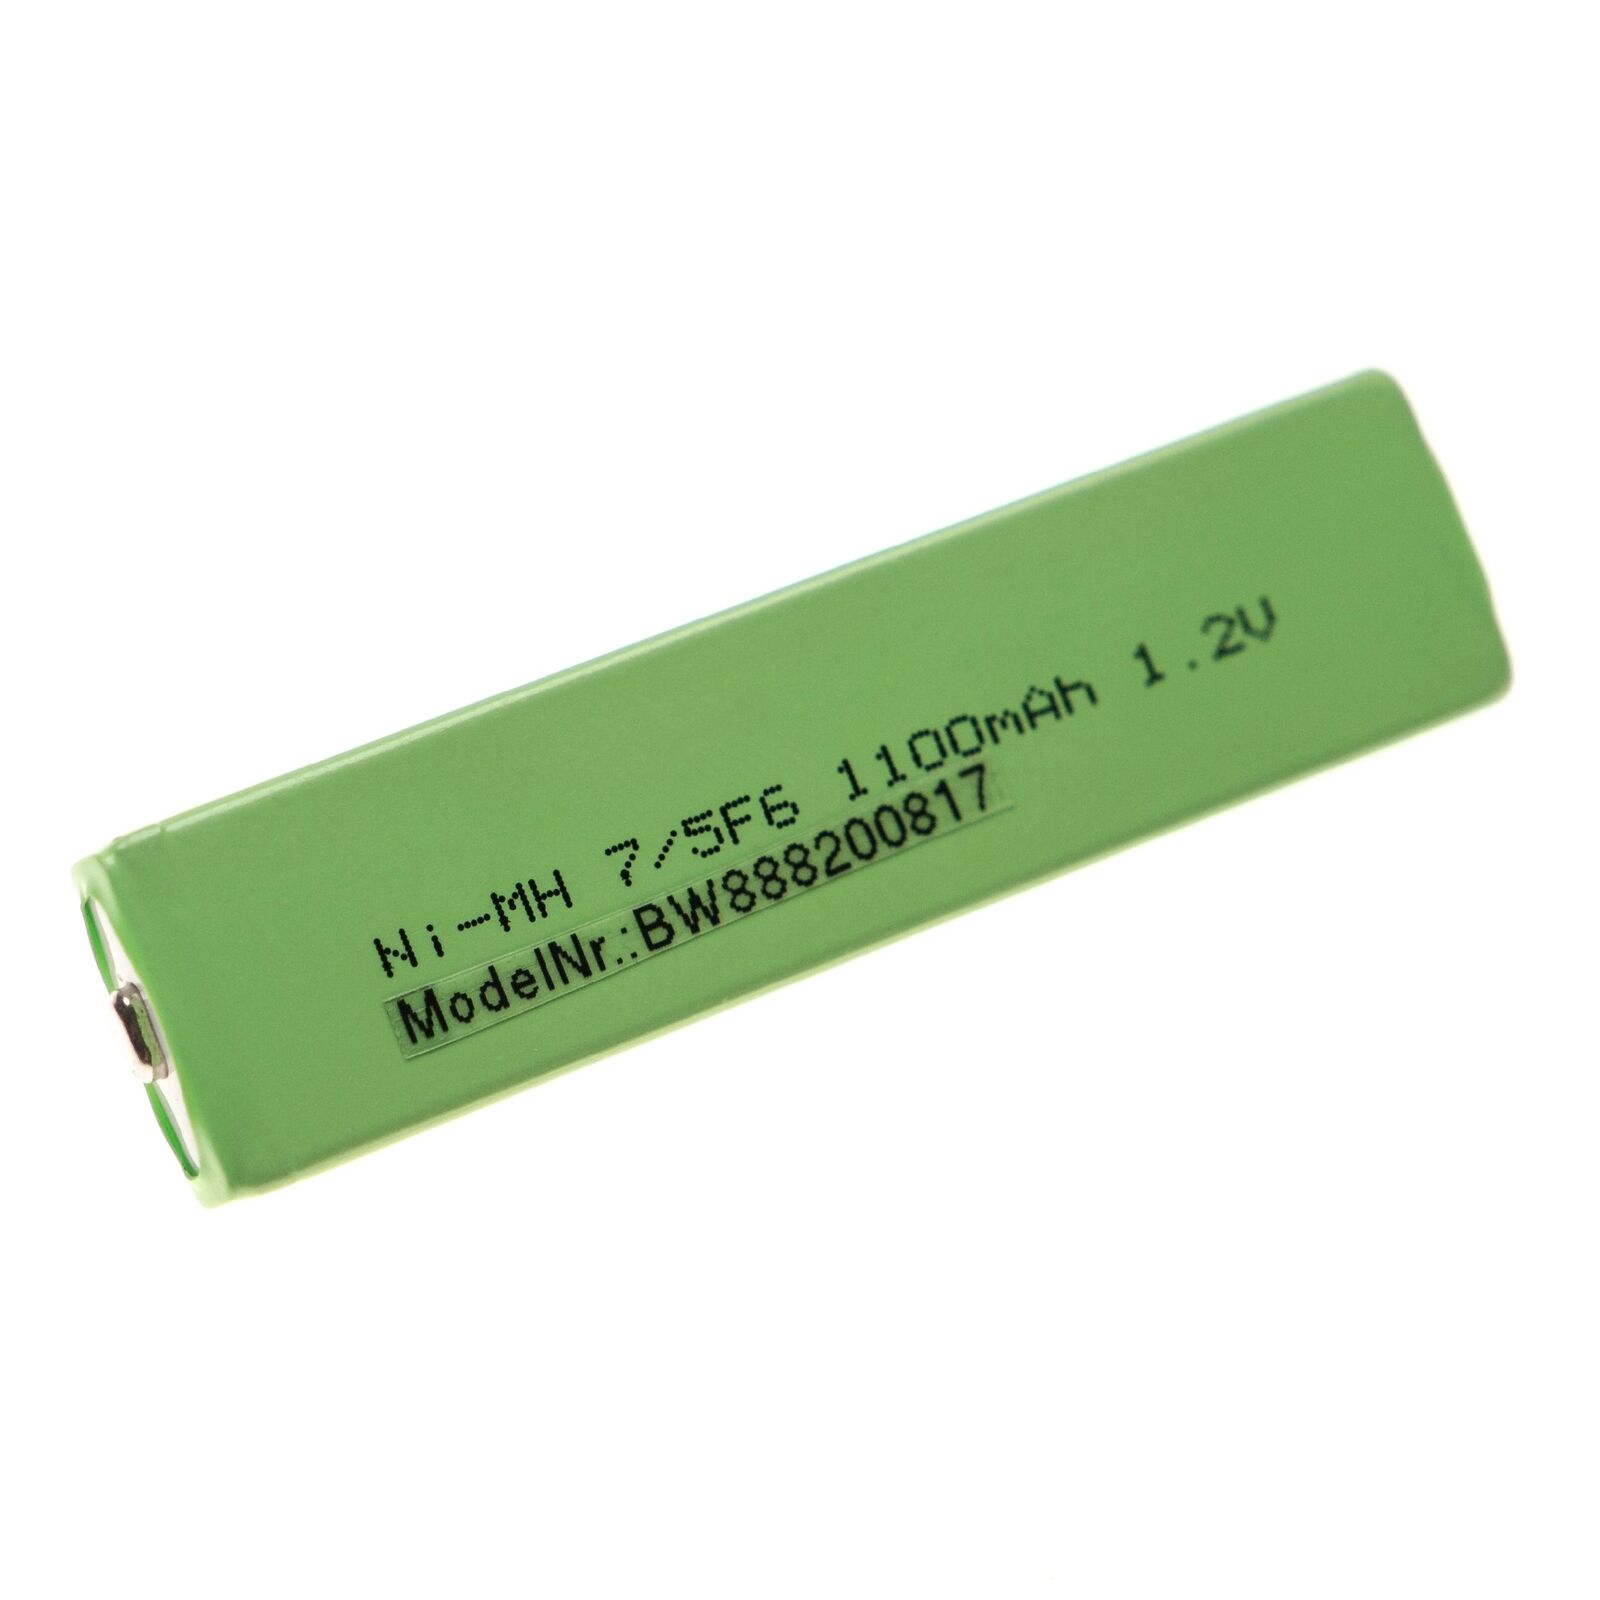 Panasonic HHF-AZ09, HHF-AZ201S, RP-BP105 kompatybilny bateria